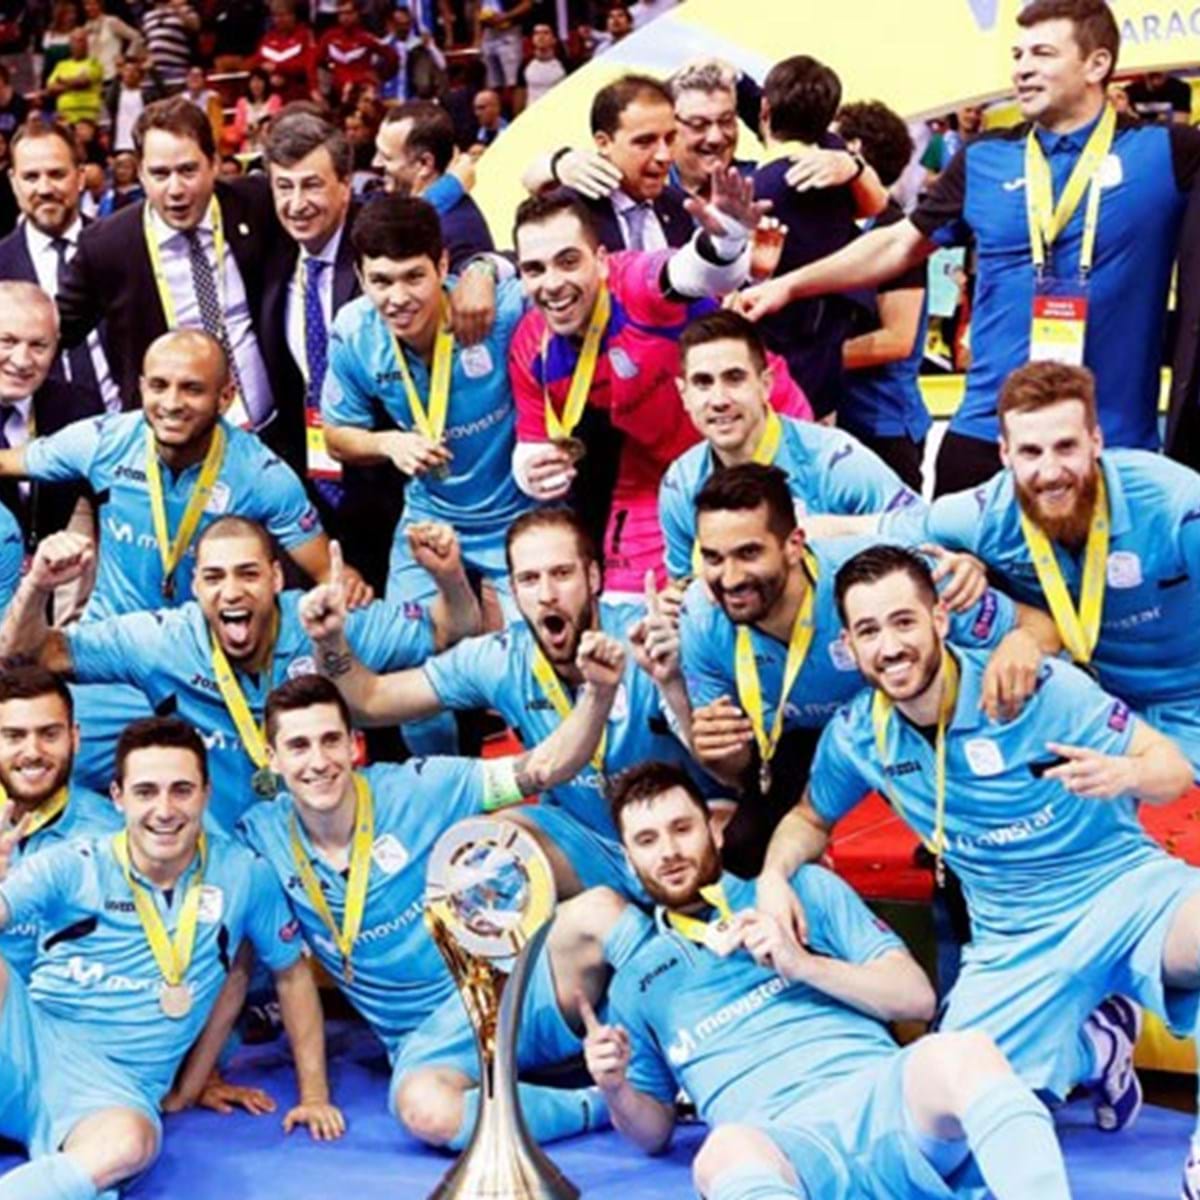 Irã conquista troféu do Campeonato Mundial Feminino de Futsal de 2018 -  Pars Today